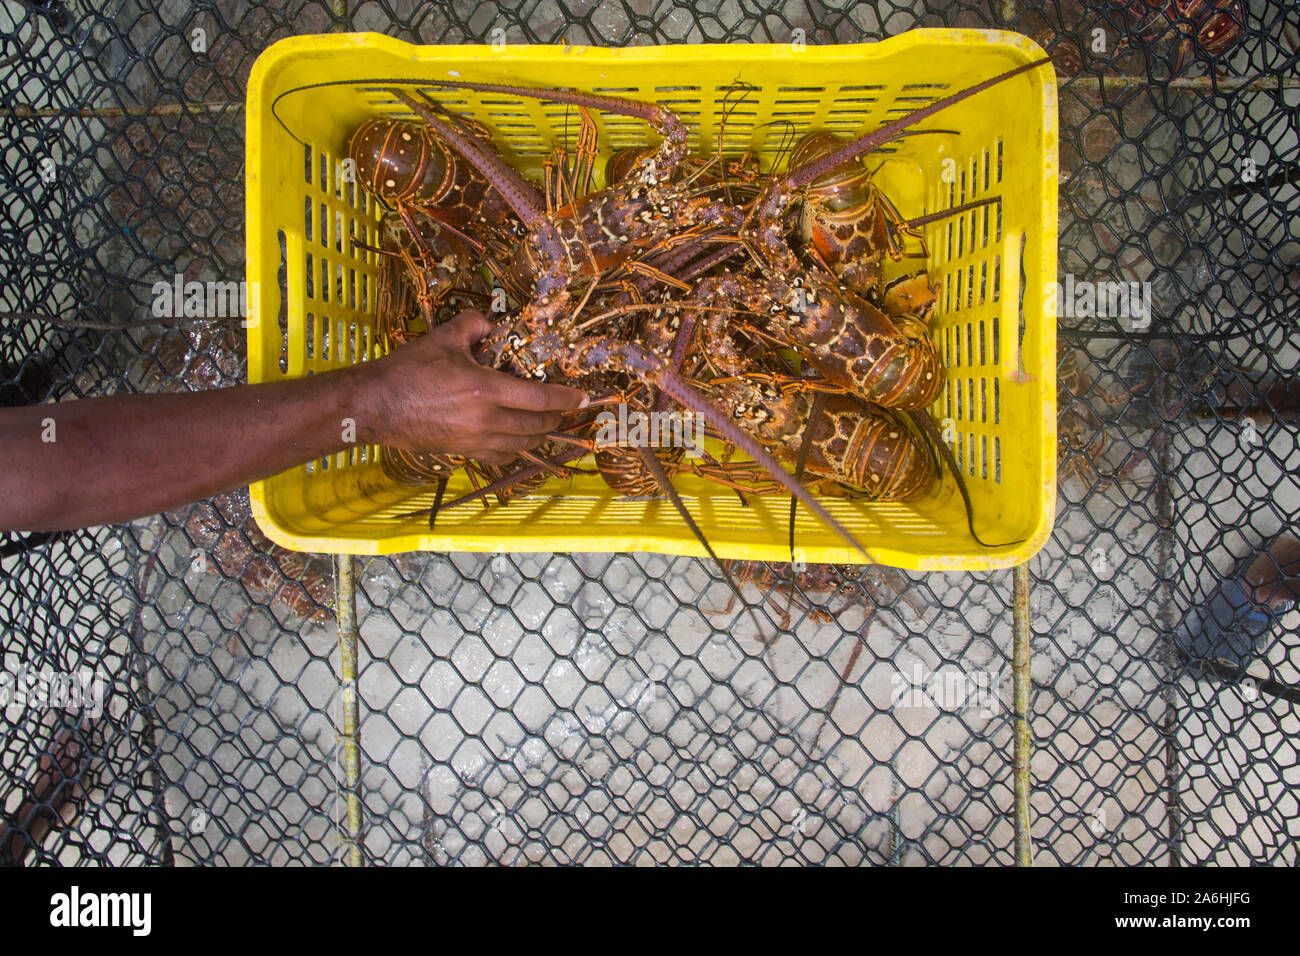 Un homme éjacule langouste fraîchement pêché durant la saison régulière pour l'exploitation du homard Homard LOS ROQUES AU VENEZUELA. Banque D'Images